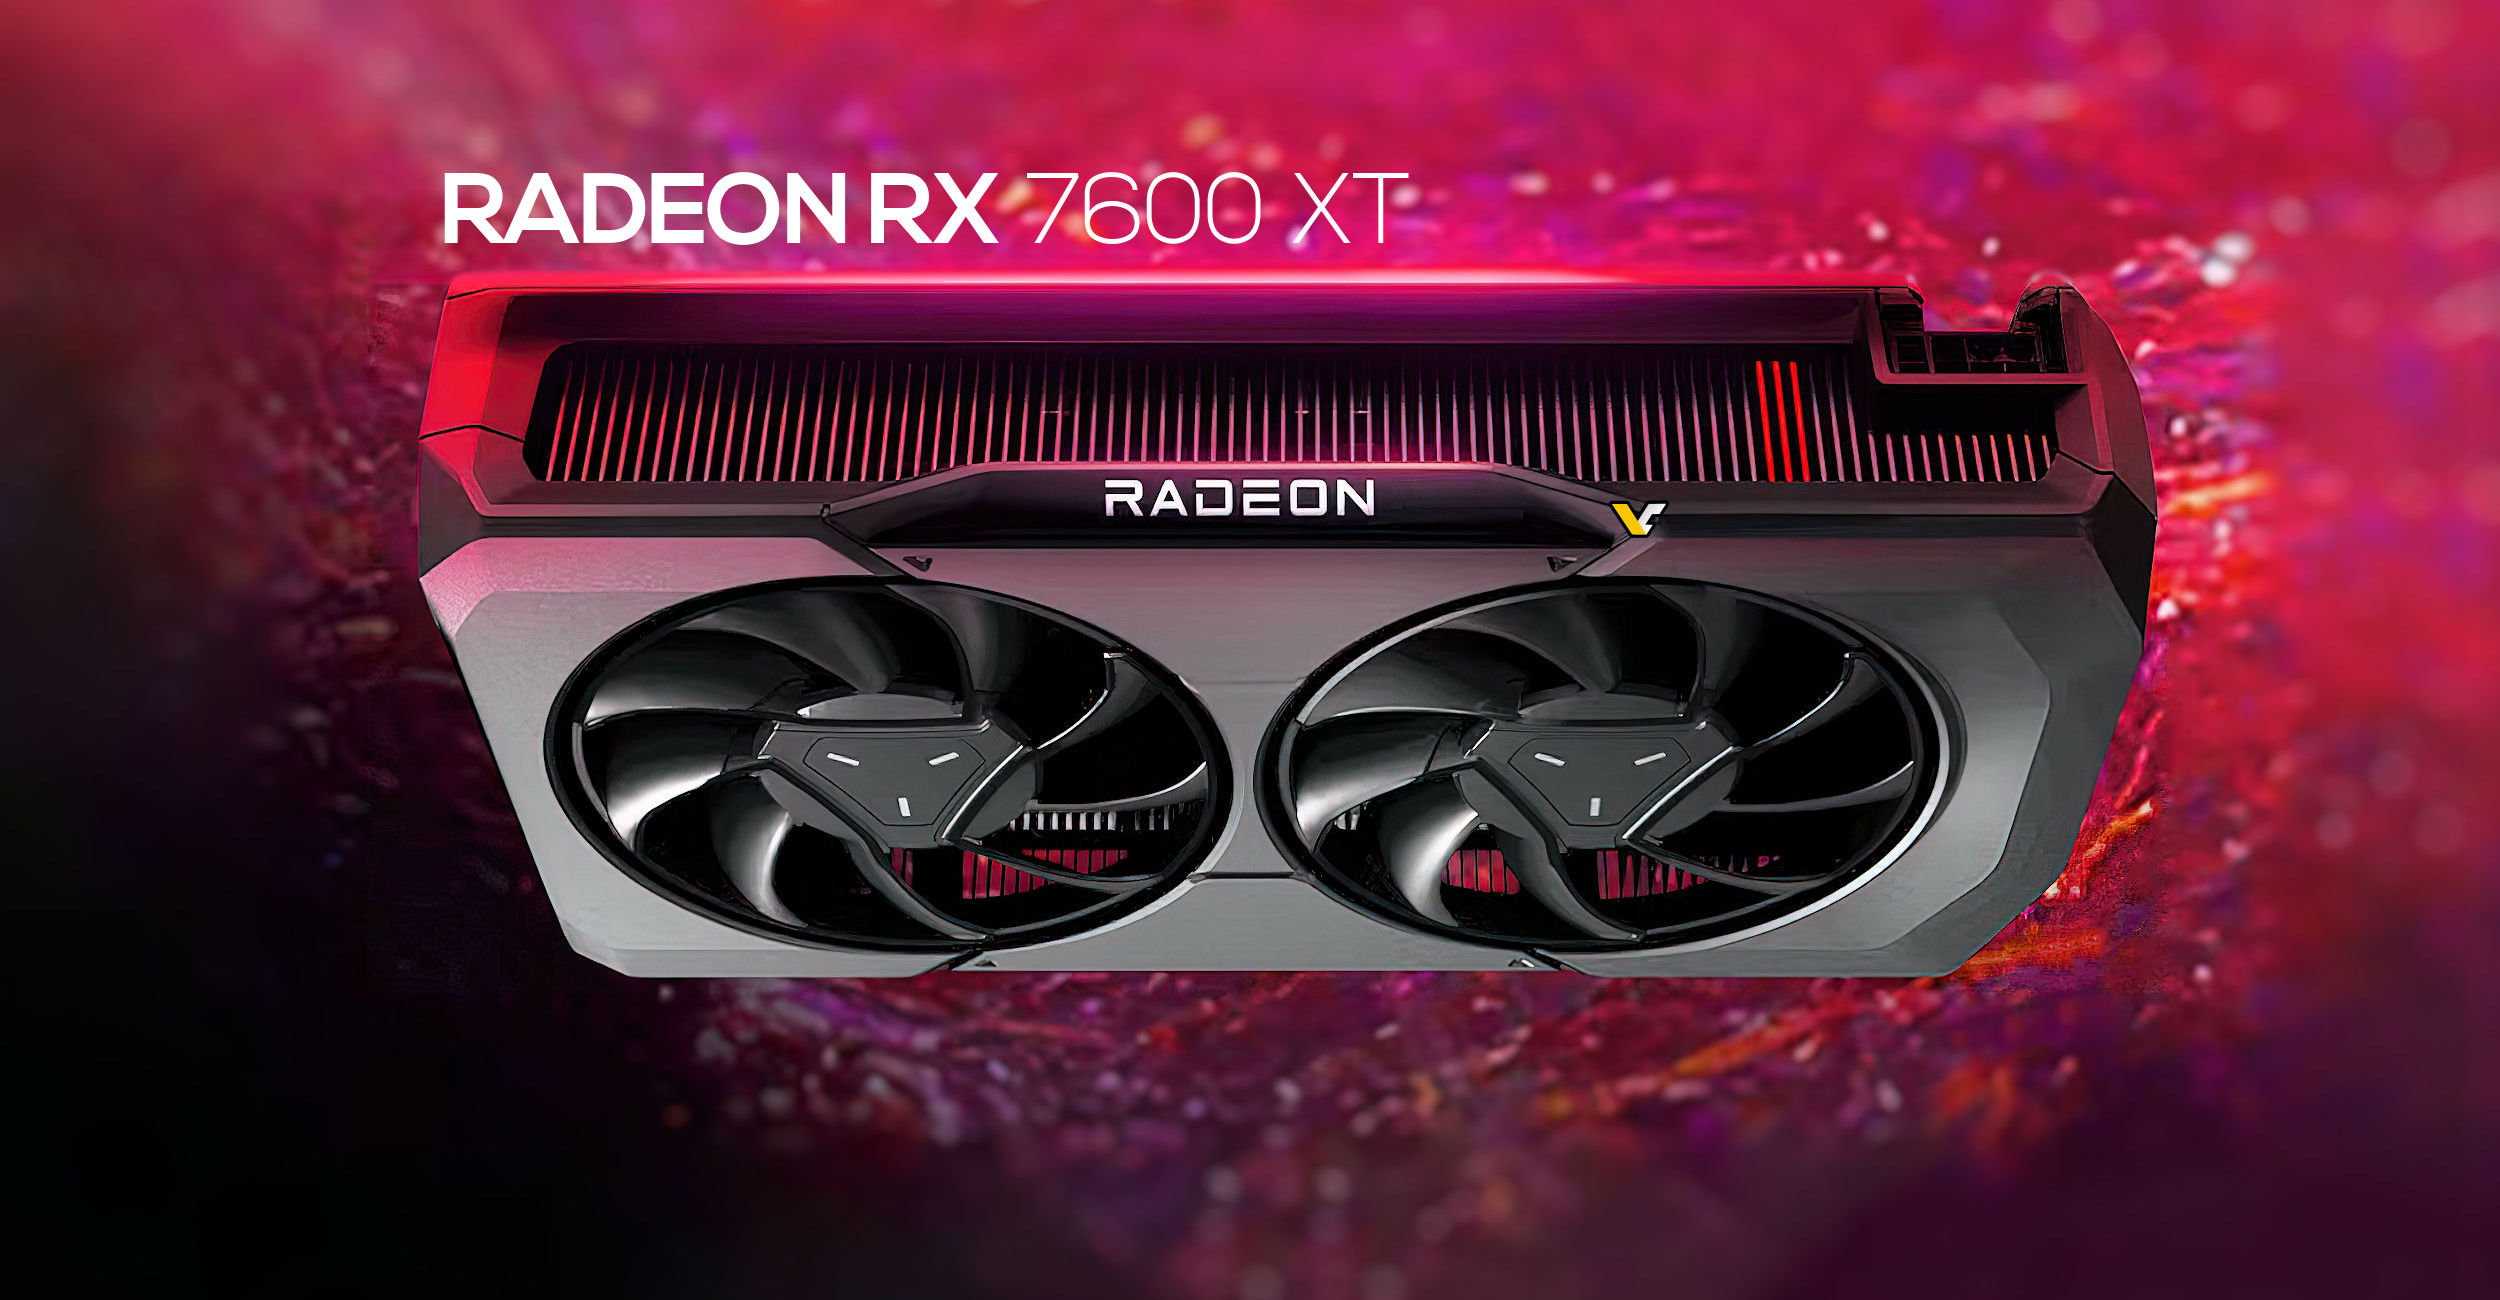 Se rumorea que AMD Radeon RX 7600 XT se lanzará el 24 de enero, solo están programadas versiones personalizadas